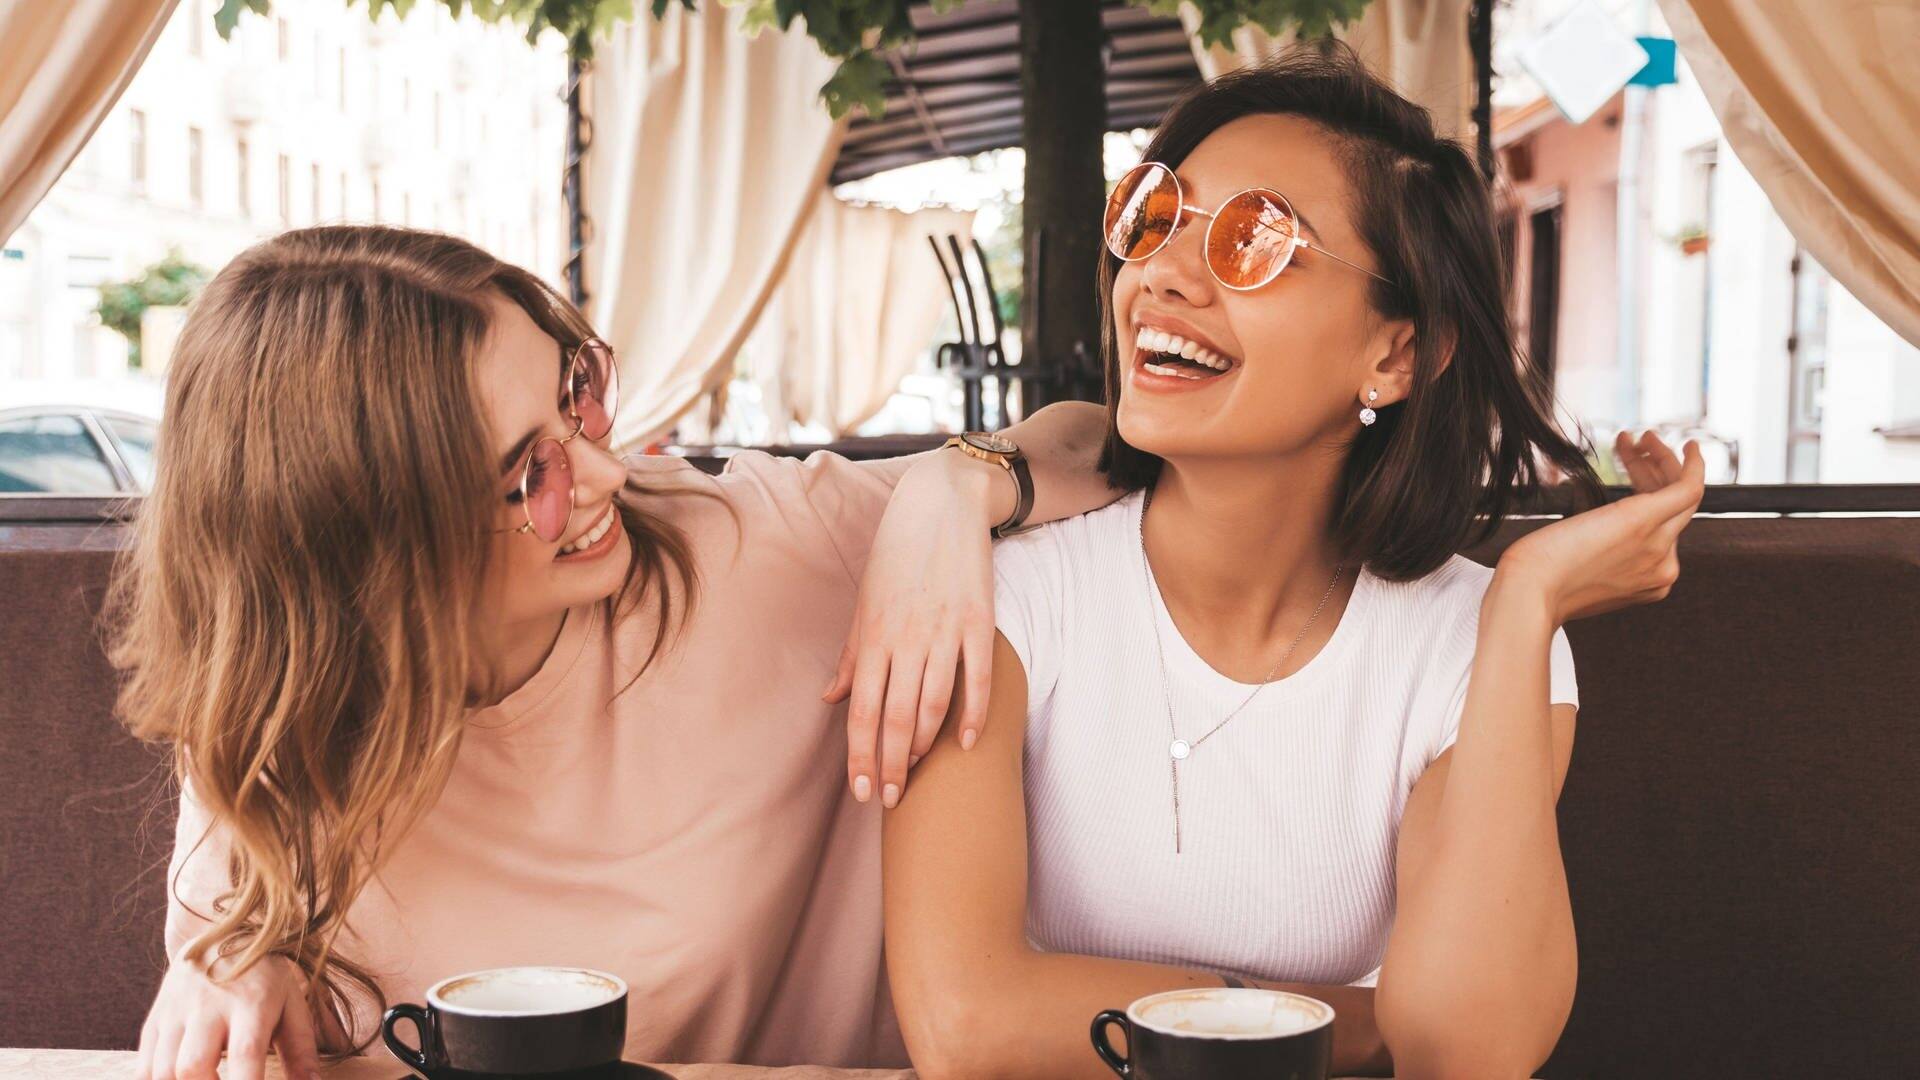 Zwei Freundinnen sitzen in einem Café, vor ihnen auf dem Tisch stehen die Getränke. Sie lachen gemeinsam, vielleicht über die Storys aus Partnerschaft und Liebe, die sie einander erzählen. (Foto: Adobe Stock, halayalex)